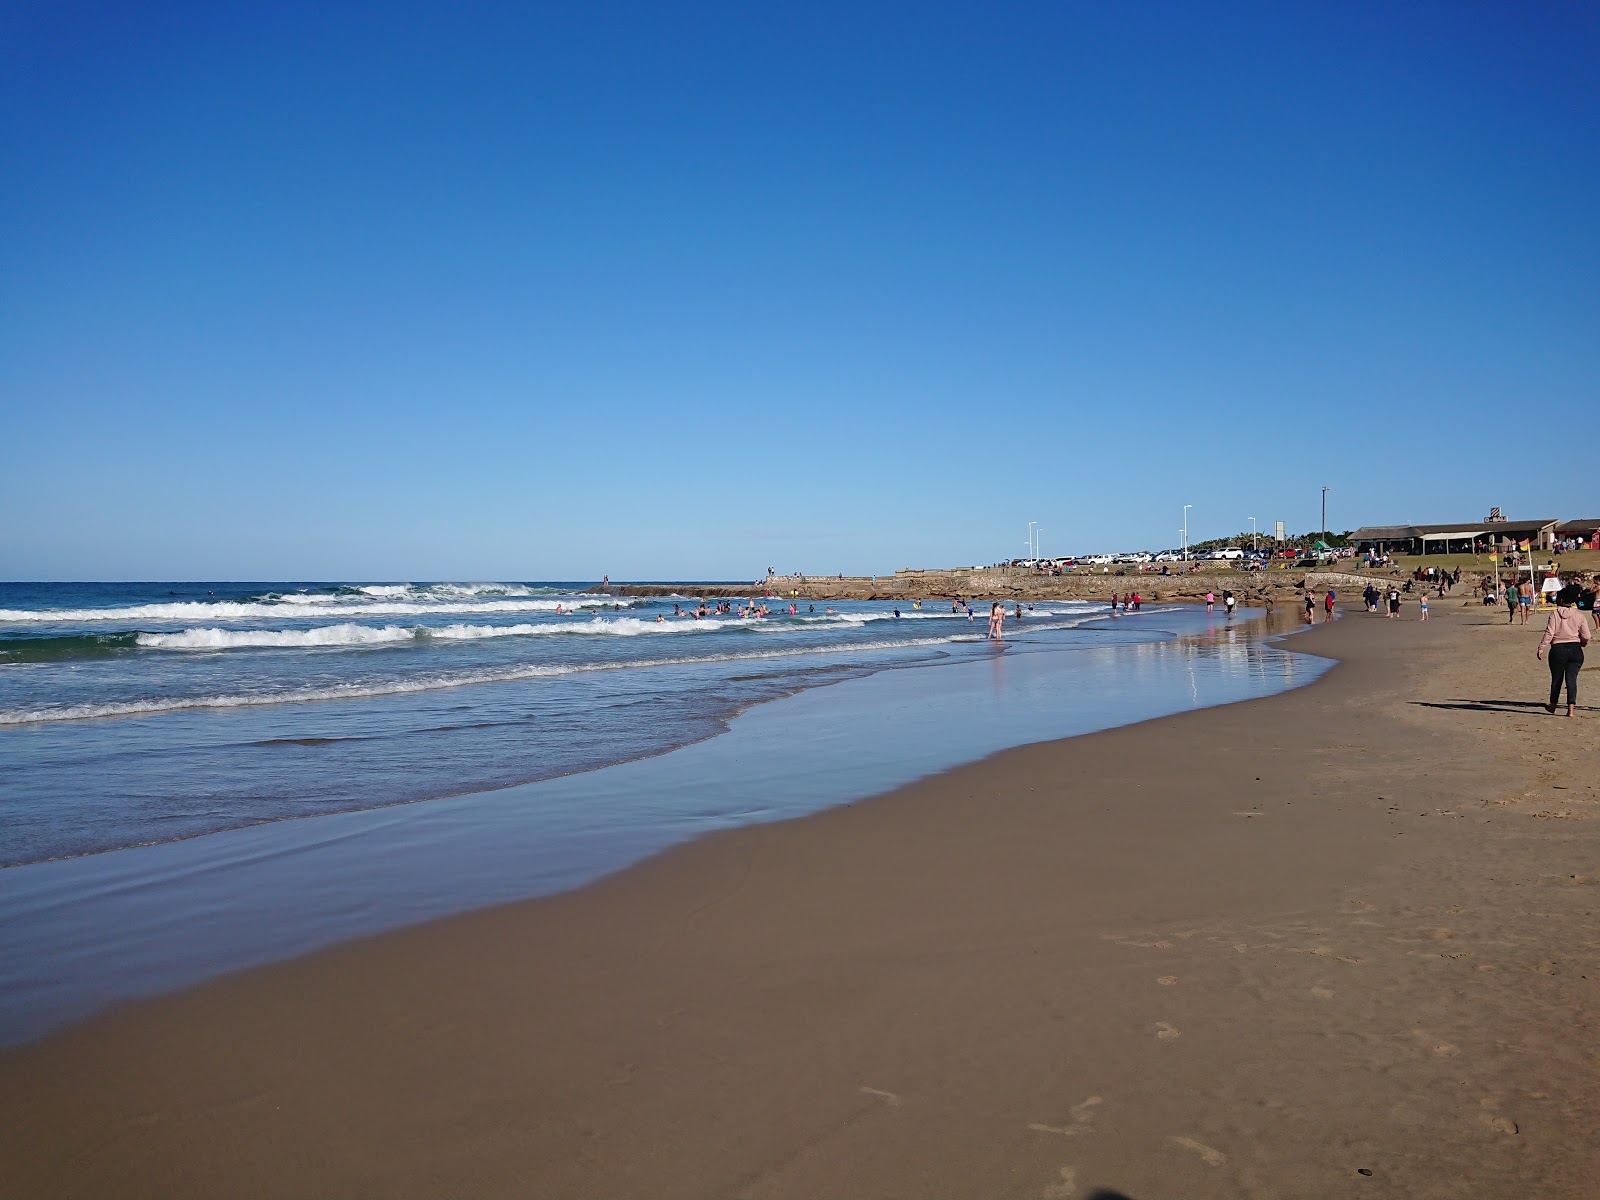 Foto de St Micheals beach con playa amplia